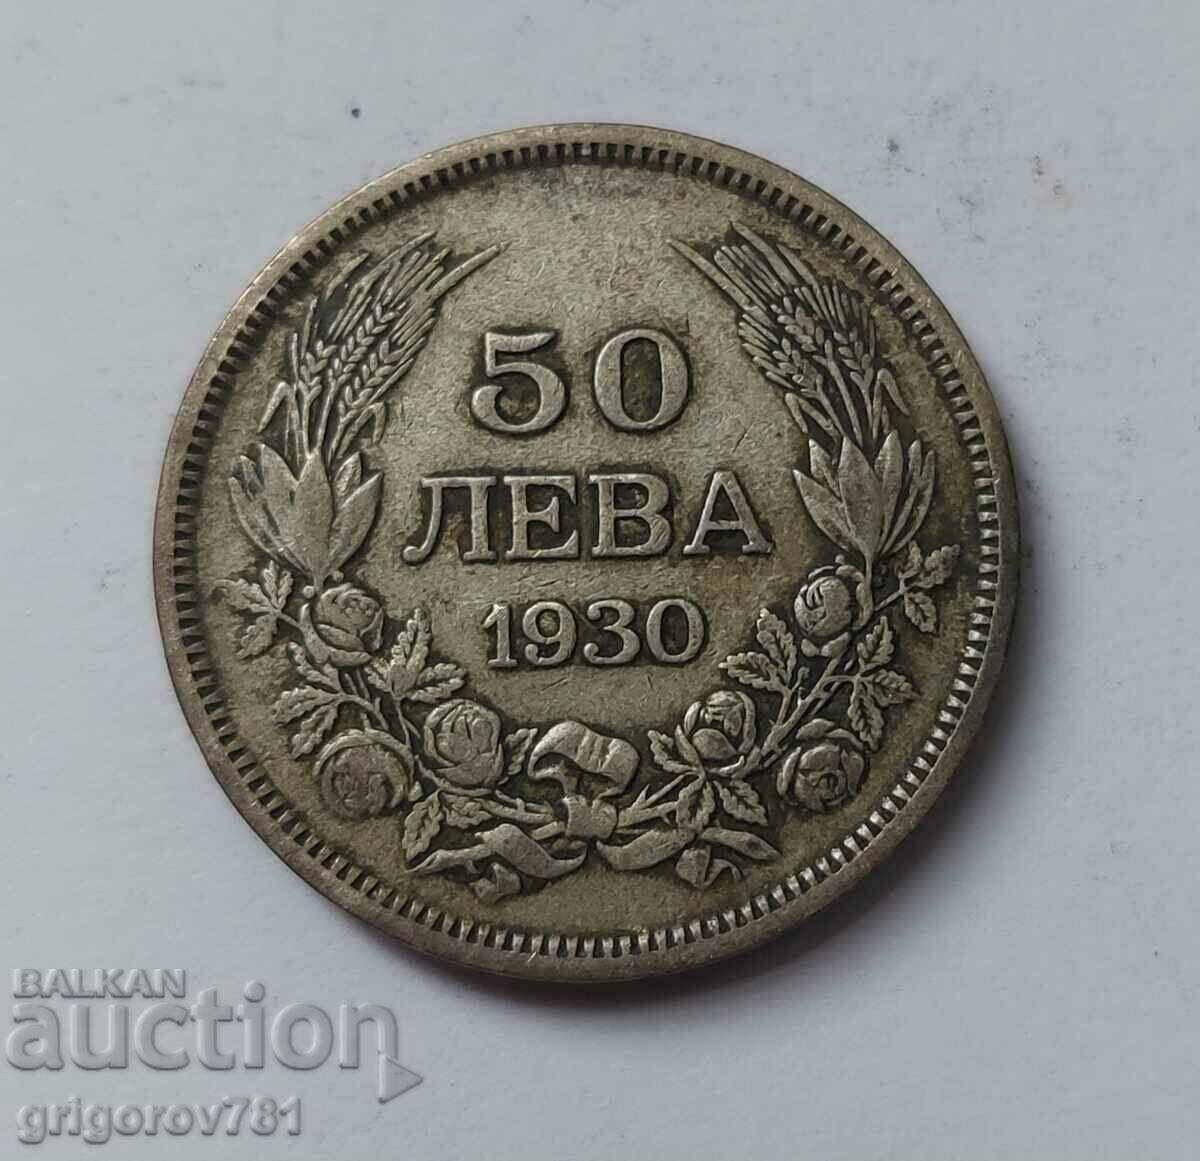 50 leva argint Bulgaria 1930 - monedă de argint #50